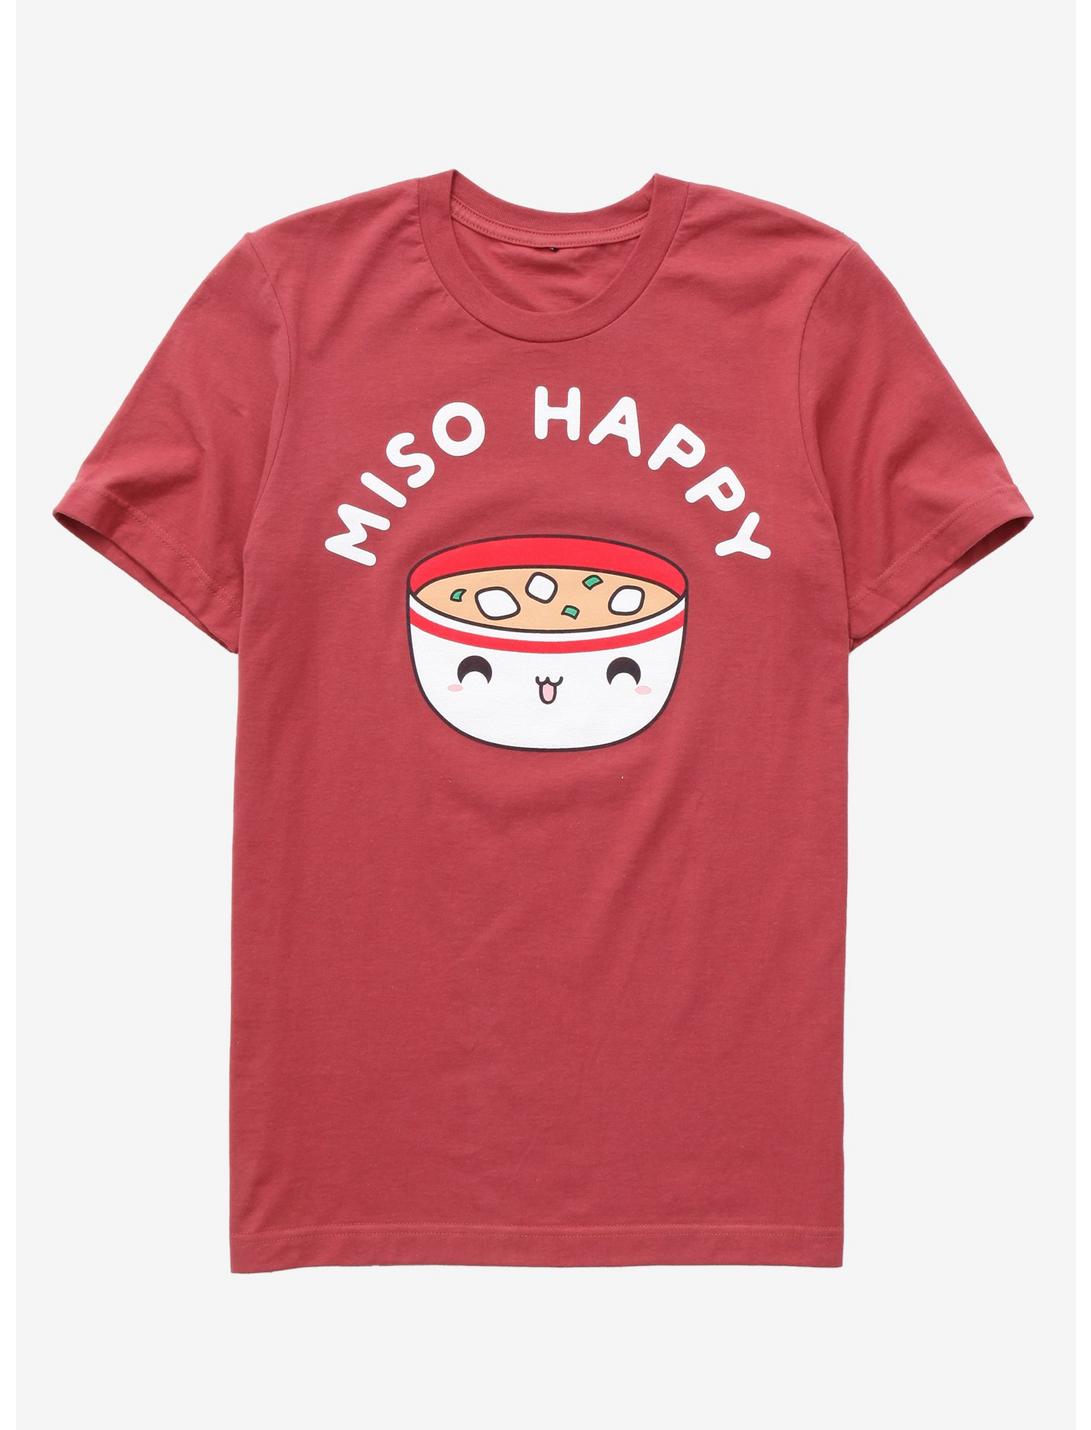 Miso Happy Women's T-Shirt - BoxLunch Exclusive, BURNT ORANGE, hi-res